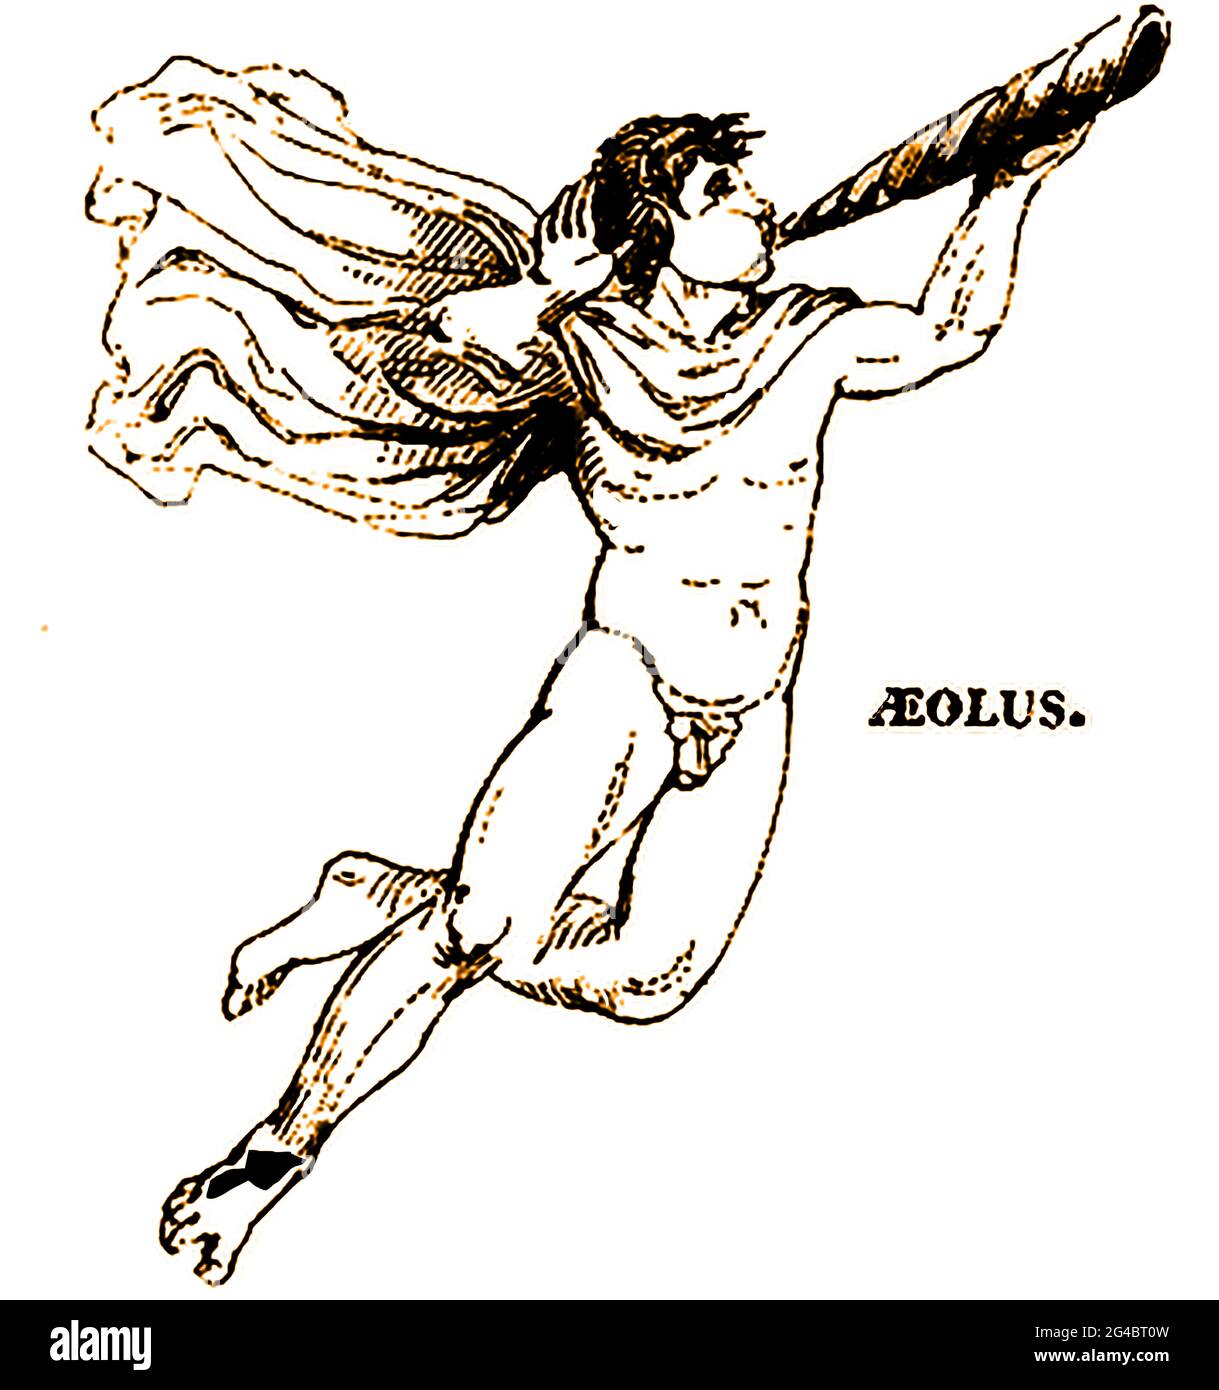 Une représentation en 1839 d'Aeolus (alias Aíolos & Αἴολος) une nymphe grecque, une figure mythologique ou un dieu semi-humain dont le nom signifie rapide, rapide ou agile. Il y a, de manière confuse, trois figures profondément enveninées avec ce nom qui semblent toutes être liées de manière généalogique. L'un était le fils de Hellen, le fondateur de la race Aéolienne, l'autre était un fils de Poséidon, qui mena une colonie aux îles de la mer Tyrrhénienne, et le troisième était un fils d'Hippotes et comme le gardien des vents. Dans l'Odyssée d'Homer, Aeolus a donné à Odysseus un sac fermé qui contenait les vents de toutes les directions Banque D'Images